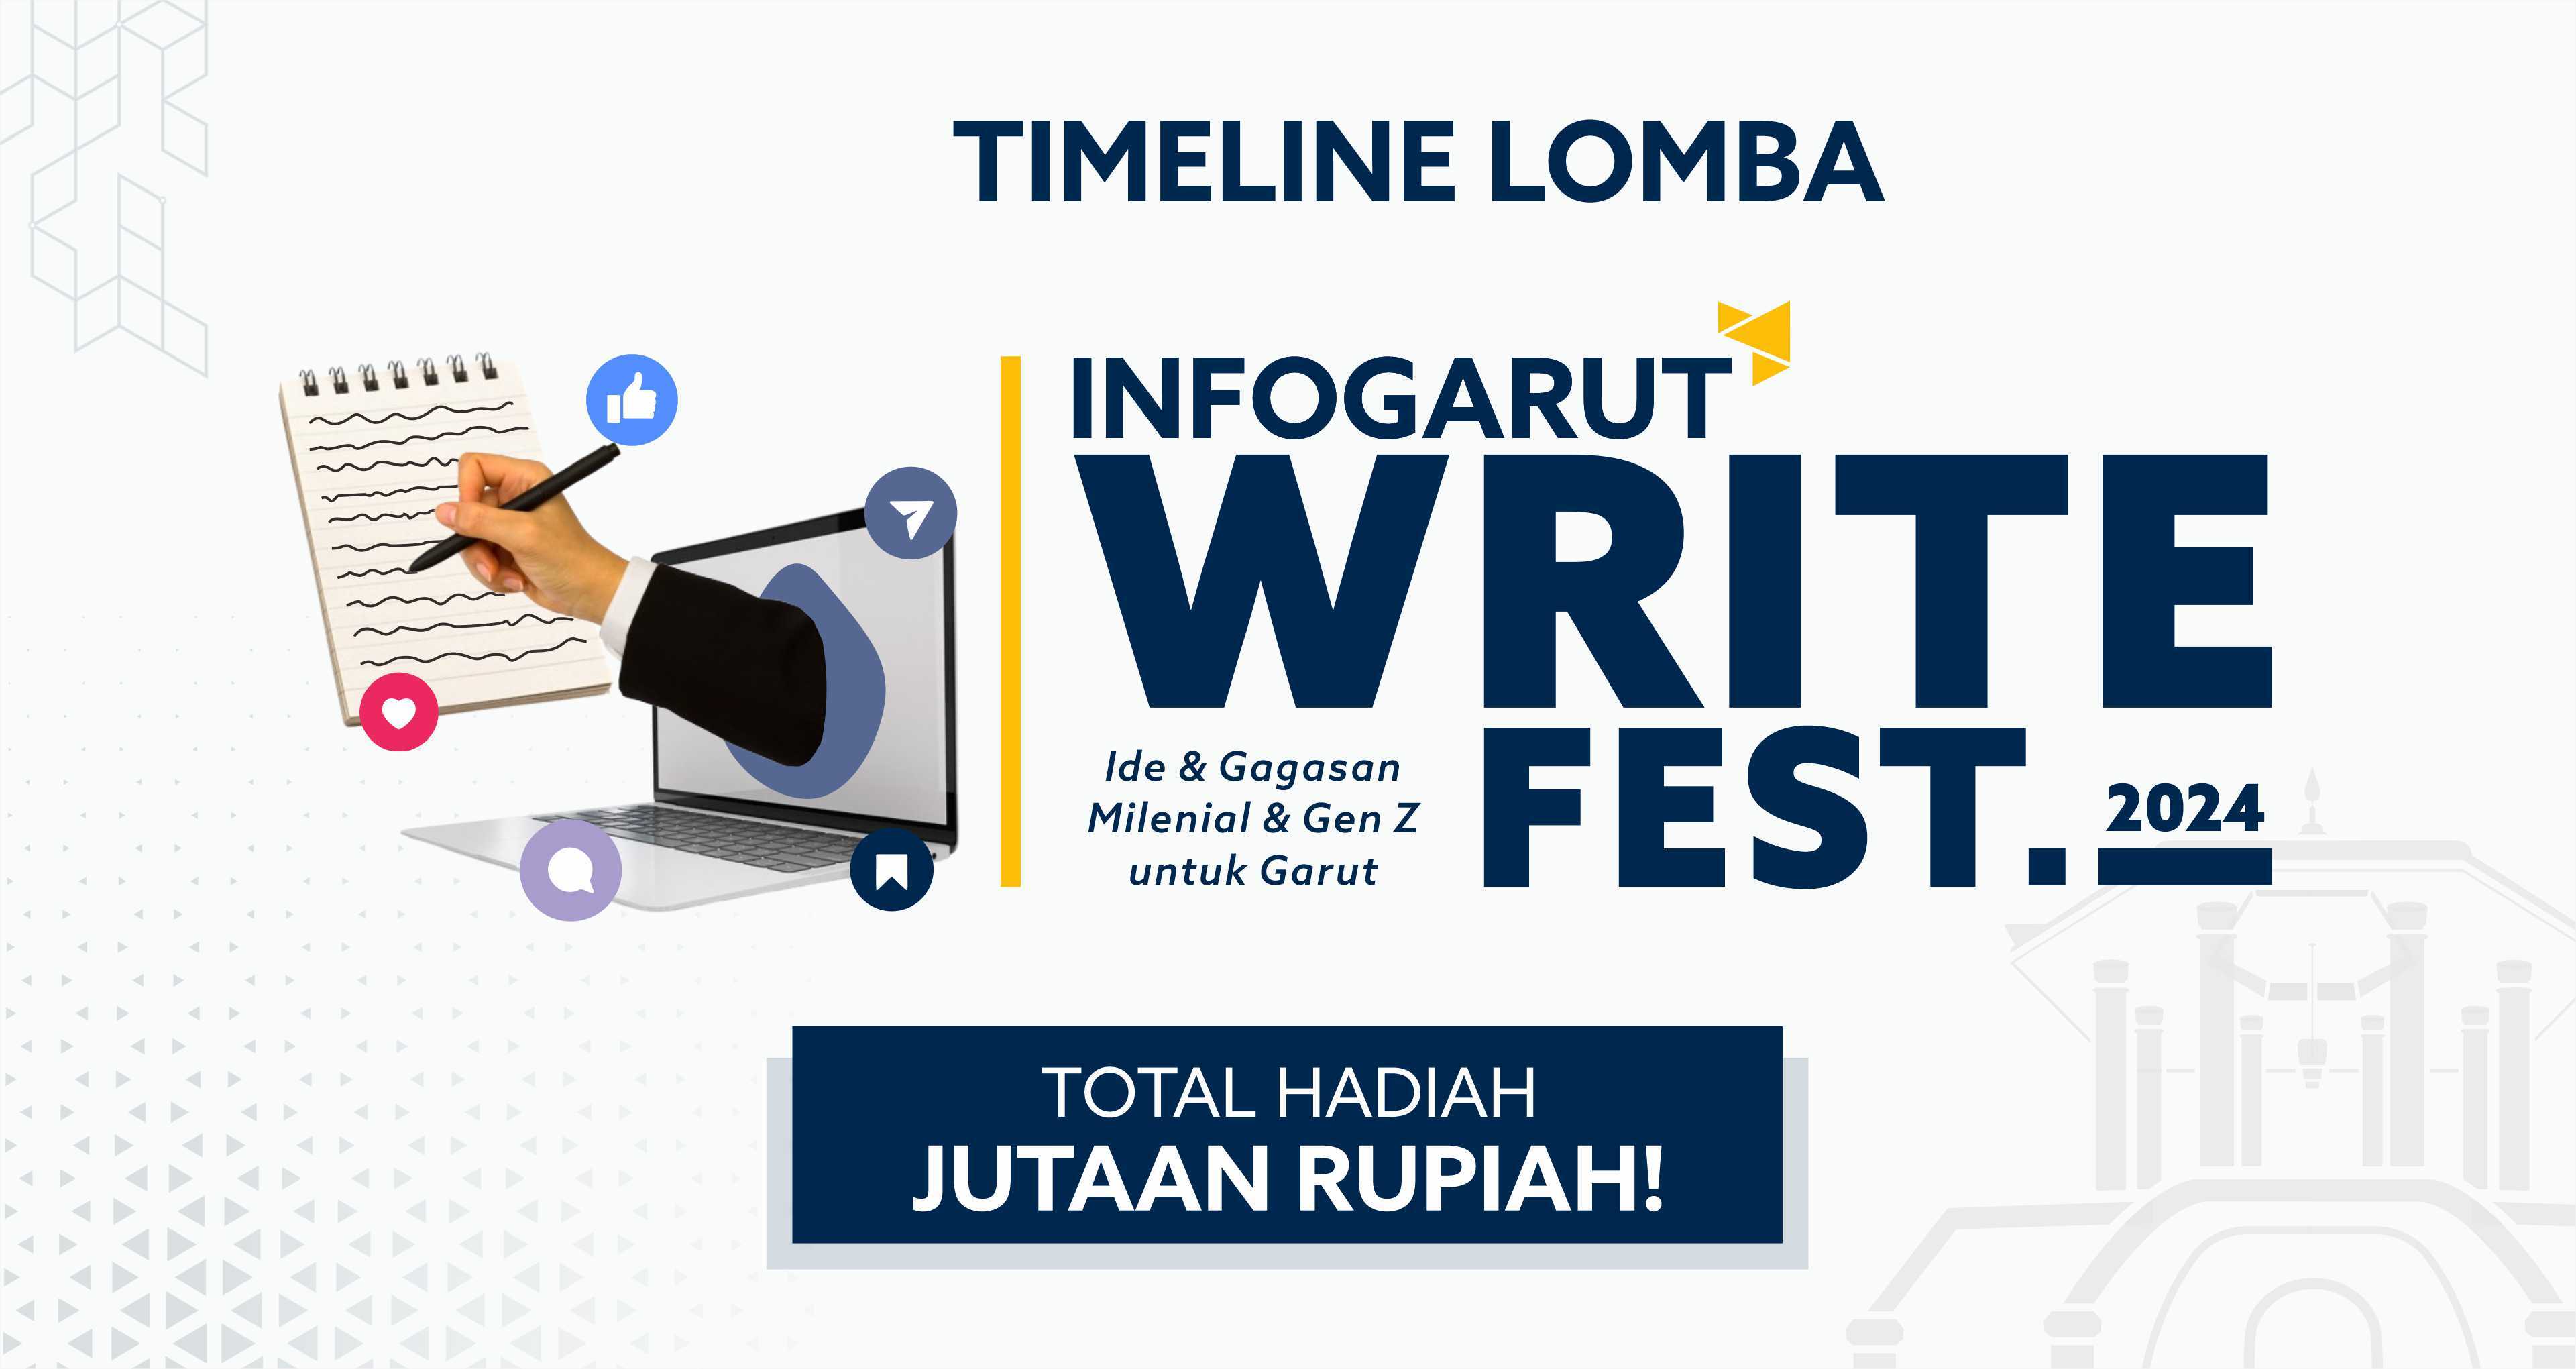 Timeline dan Format Tulisan Lomba Info Garut Write Fest 2024